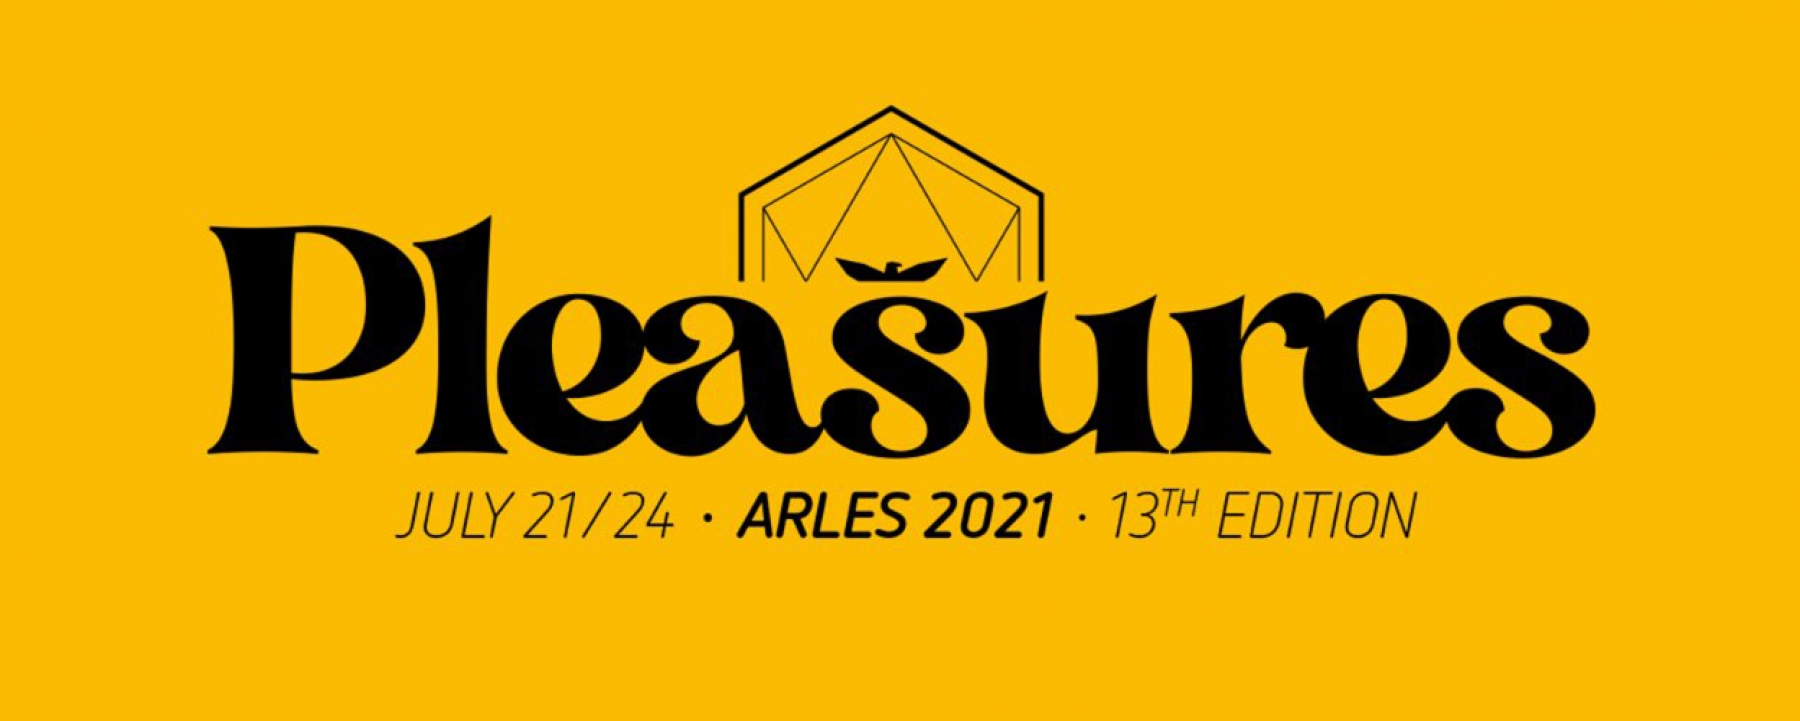 Les Napoleons - Arles 2021, par Momentum du 21 au 24 juillet 2021